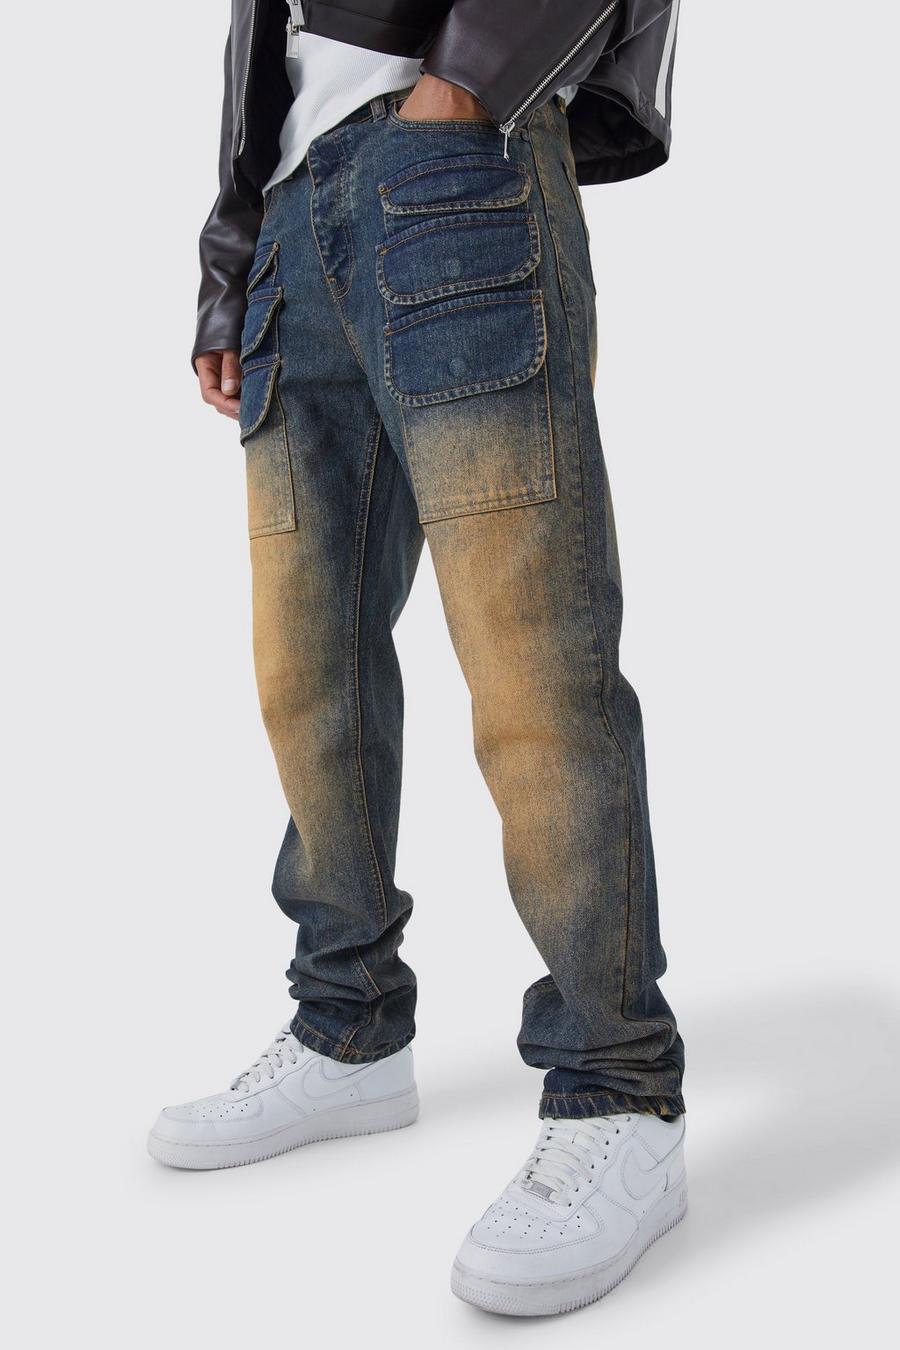 Jeans Cargo Tall dritti in denim rigido colorato con strappi, Antique wash